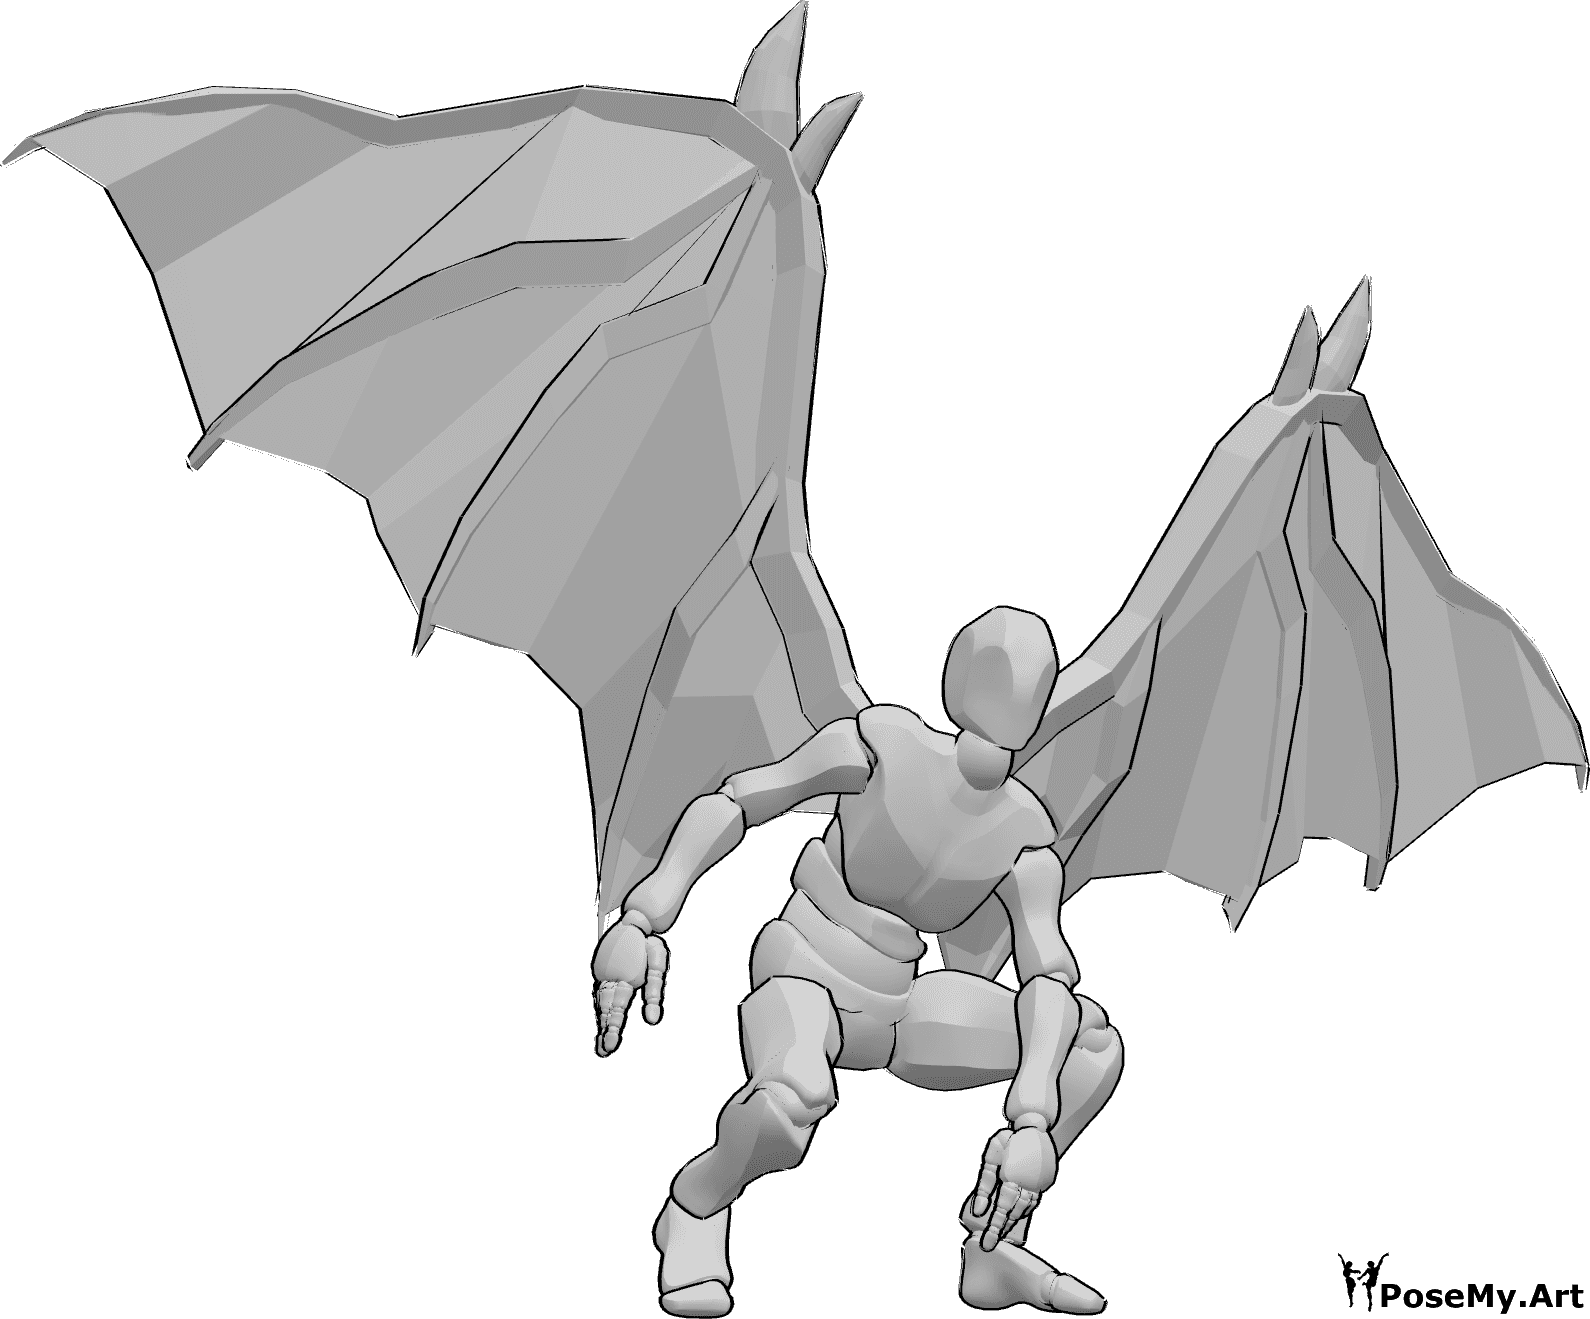 Referencia de poses- Postura de aterrizaje con alas de diablo - Hombre con alas de diablo está aterrizando, mirando hacia delante y haciendo equilibrio con las manos